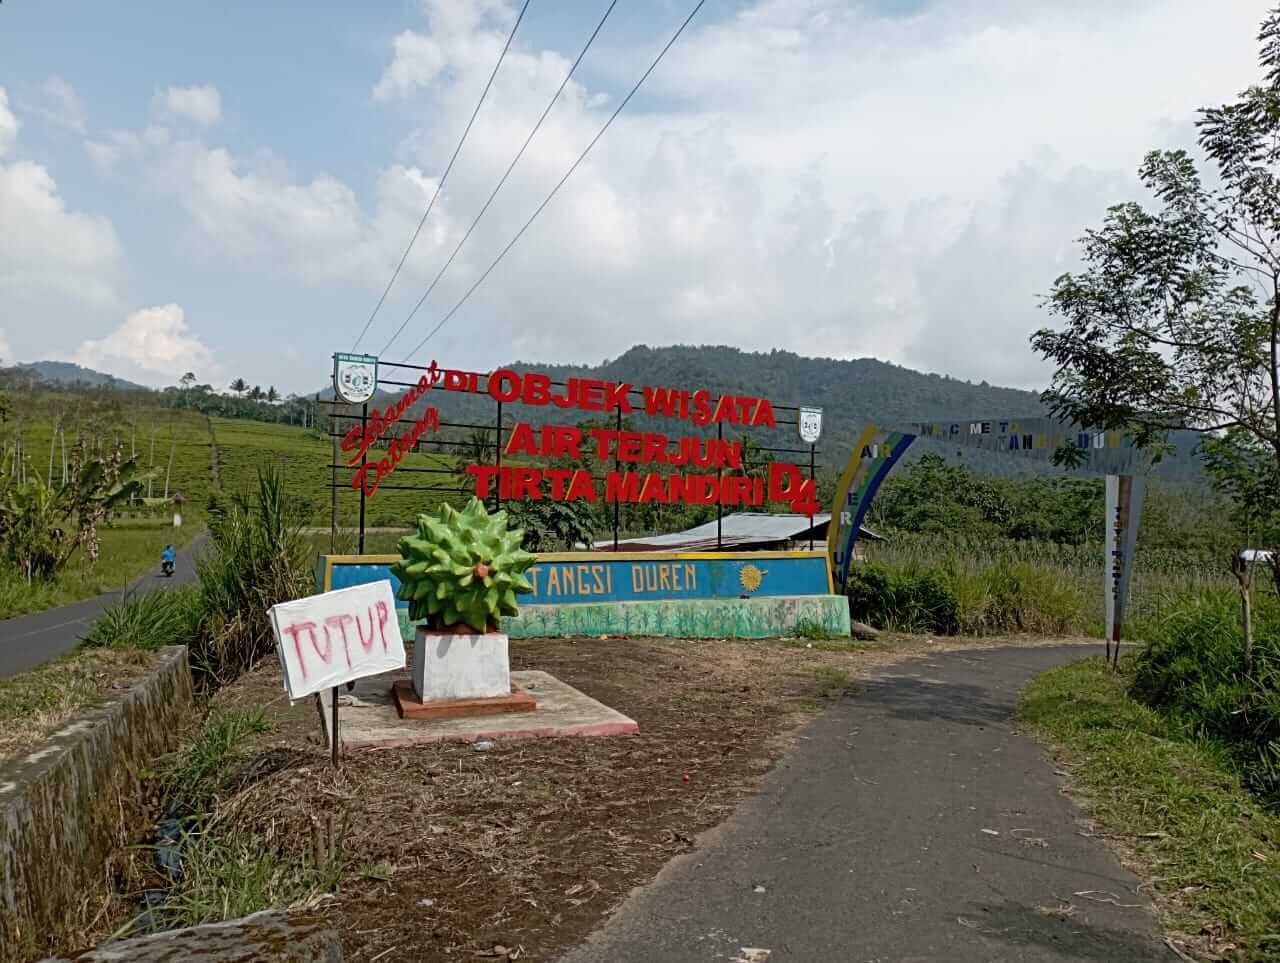  Masuk 10 Besar Ajang Desa Wisata Tingkat Provinsi, Desa Tangsi Duren Kenalkan Objek Wisata Baru!